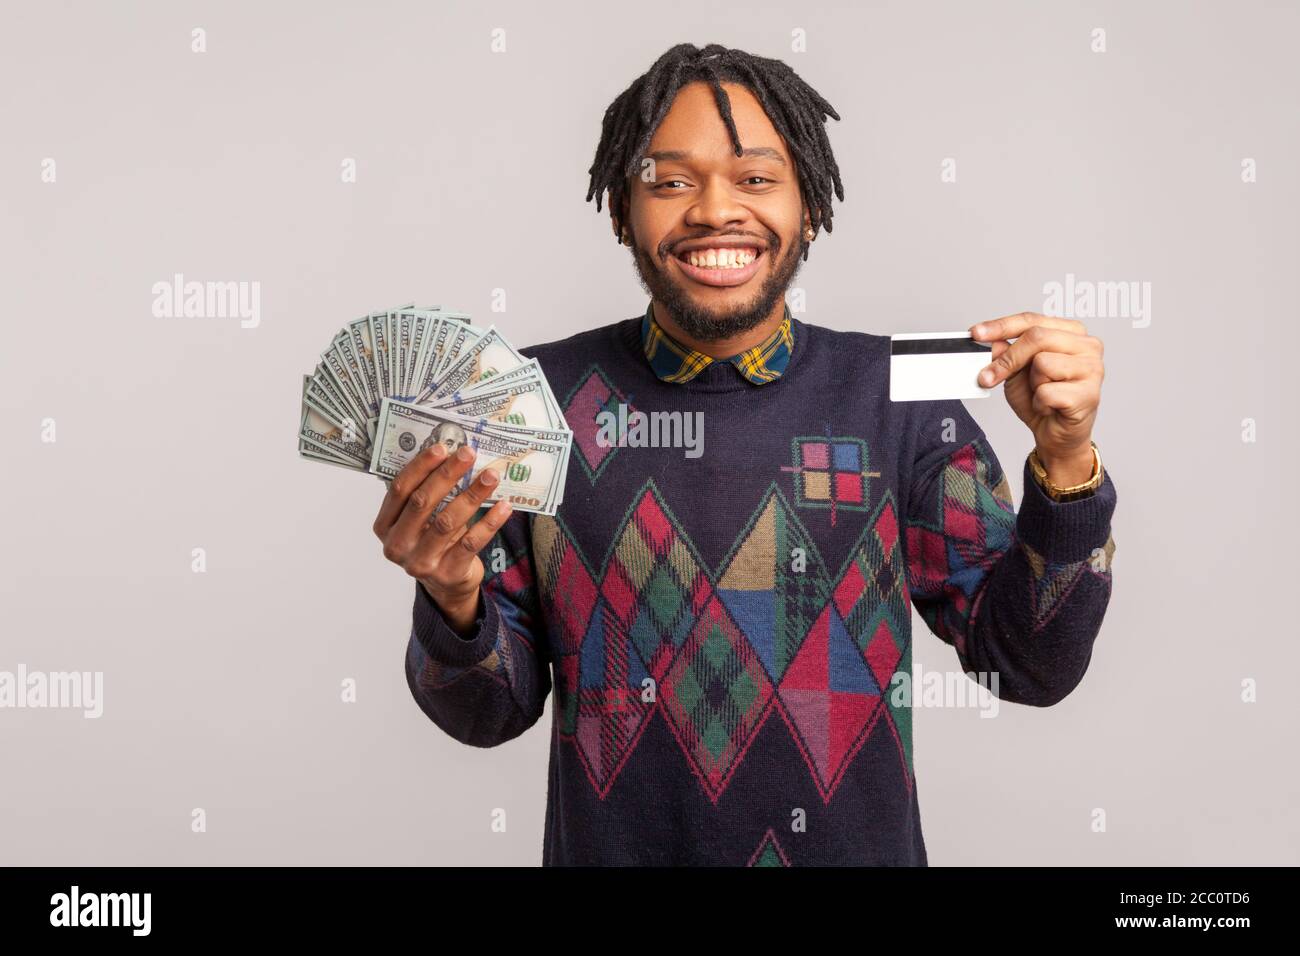 Un homme africain heureux et excité avec des dreadlocks dans un sweat-shirt décontracté tenant une carte de crédit et un lot de dollars avec un sourire crasseux, facile à créditer bas niveau Banque D'Images